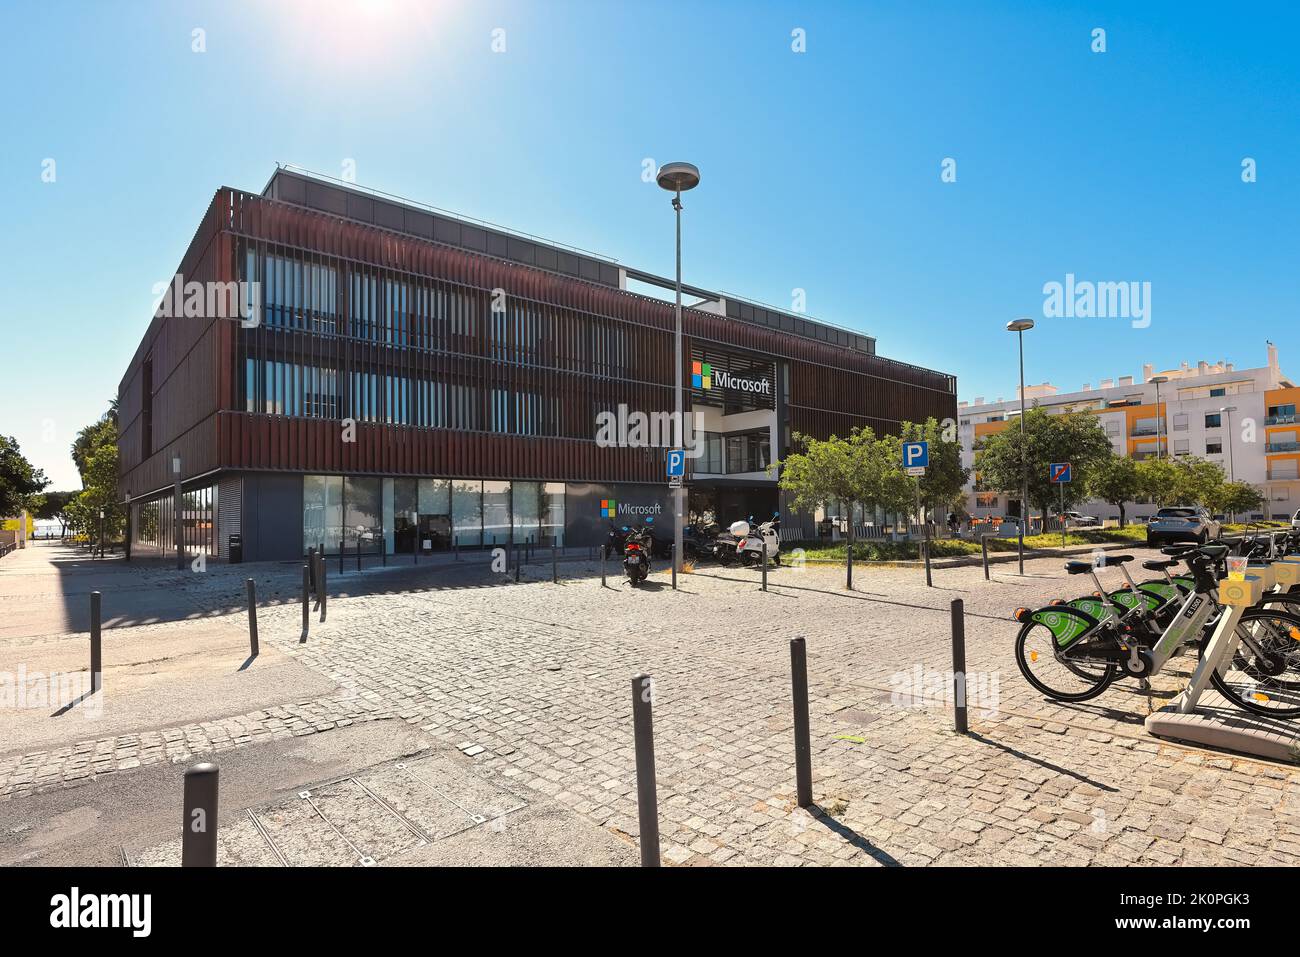 Microsoft à Lisbonne, la capitale du Portugal. Bureaux Microsoft dans le Parque das Nações, quartier du Parc des Nations, connu sous le nom d'Expo. Banque D'Images